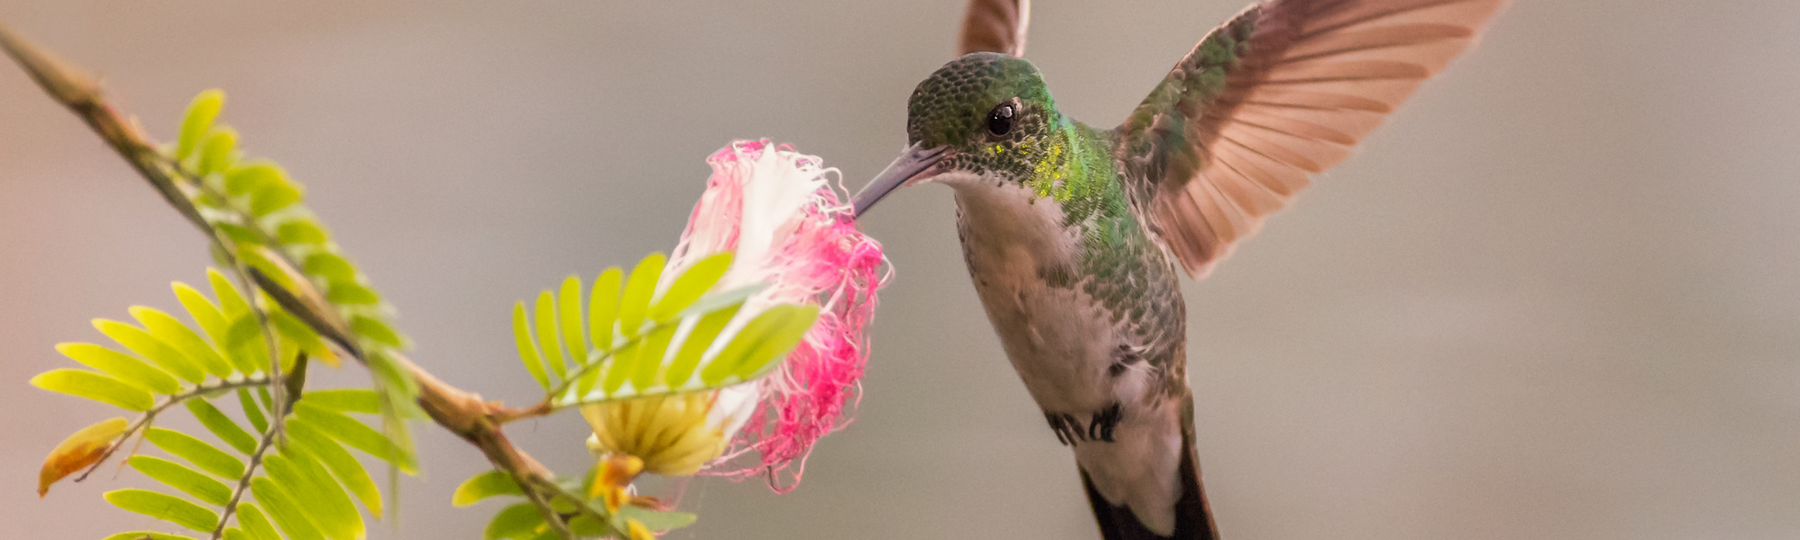 When Do I Stop Feeding Hummingbirds?